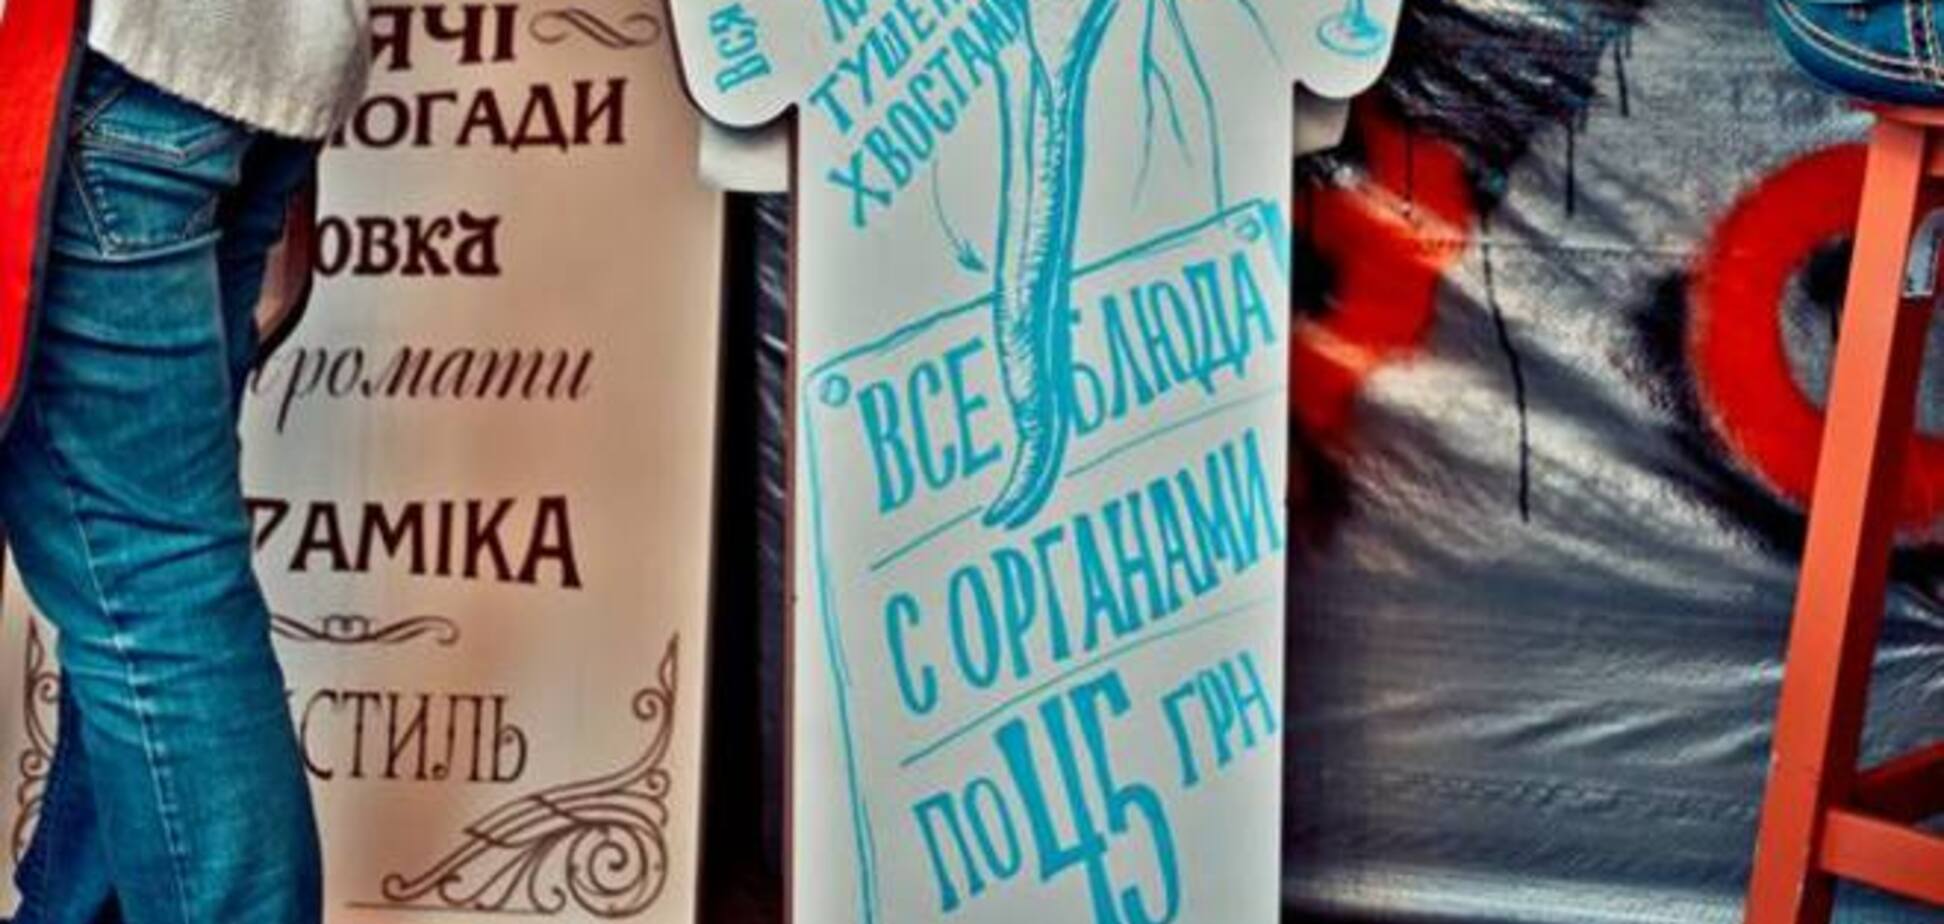 Фестиваль уличной еды в Киеве: блюда с органами и варенье из роз